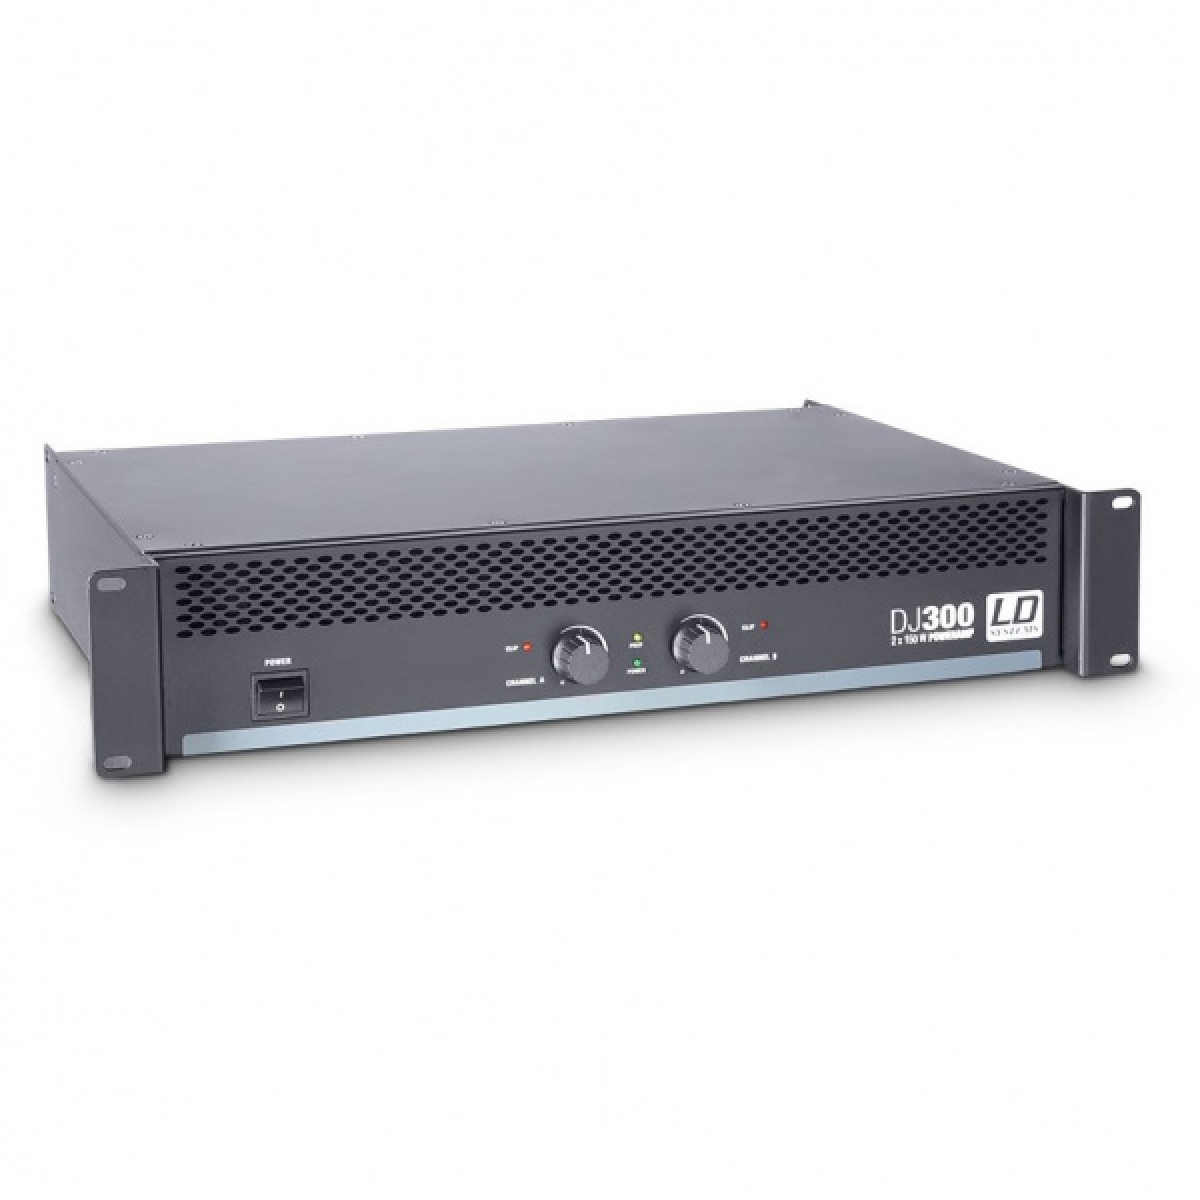 Мощность 500 дж. LD Systems dj500 Power Amplifier. LD Systems deep2 4950. QSC cx302 усилитель мощности. QSC pl325.